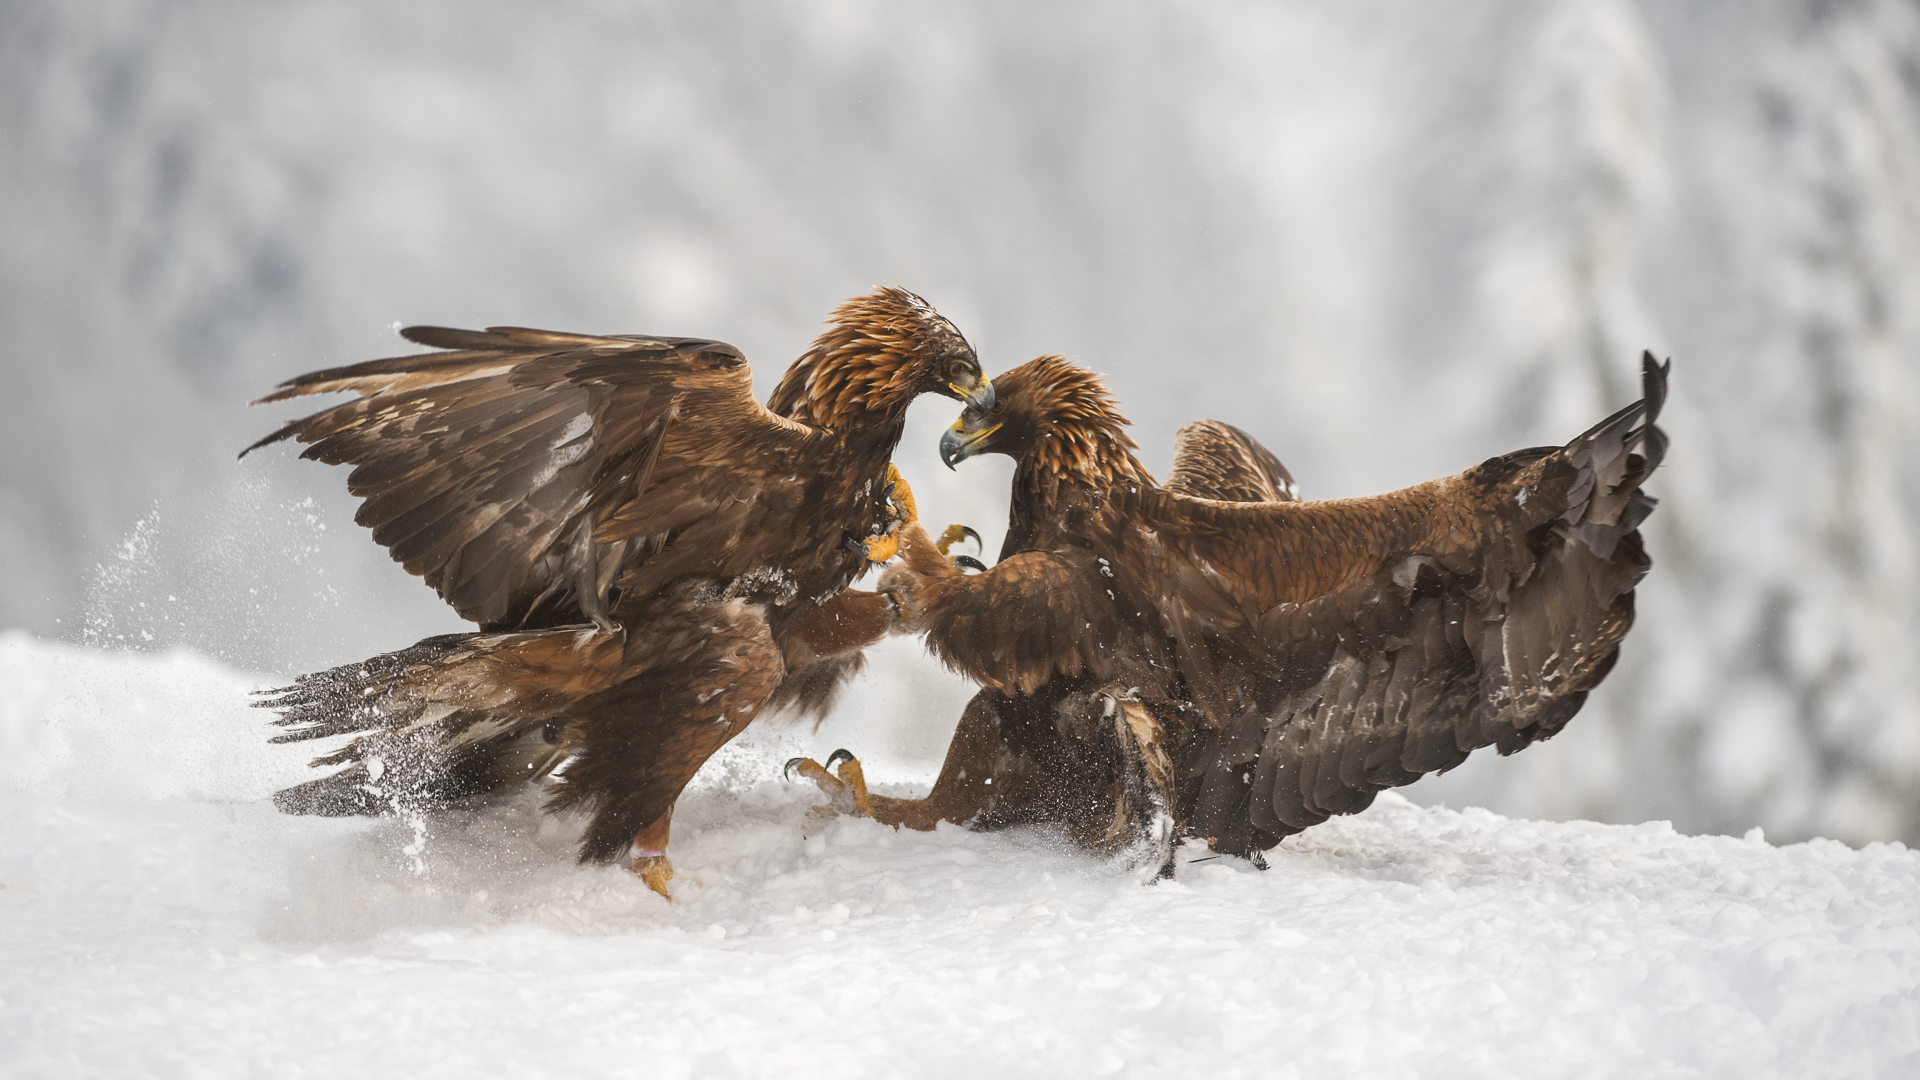 Grabbing golden eagles, Gaute Frøystein